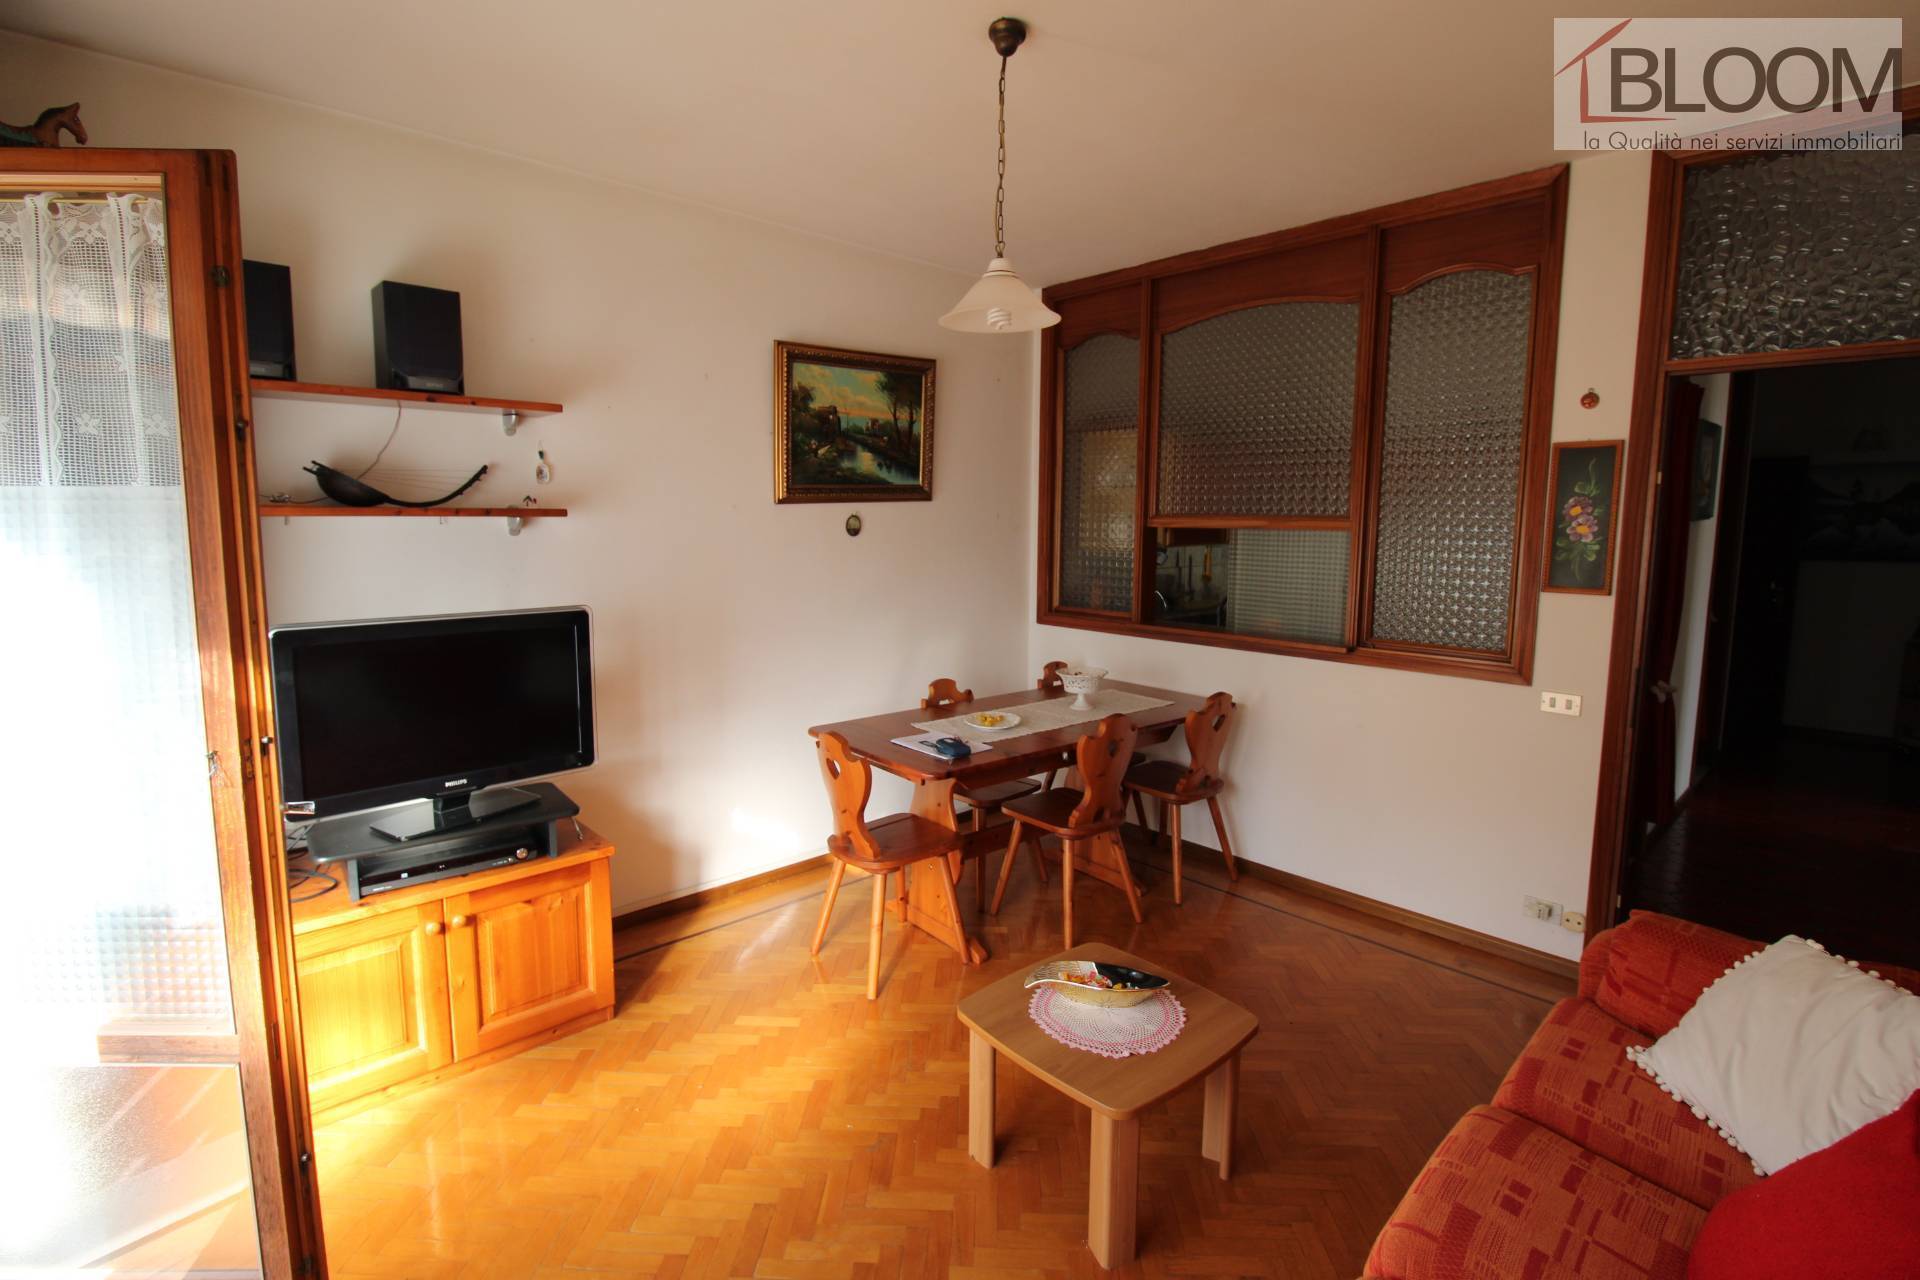 Appartamento in vendita a Pieve di Cadore, 4 locali, zona Località: TaidiCadore, prezzo € 155.000 | PortaleAgenzieImmobiliari.it